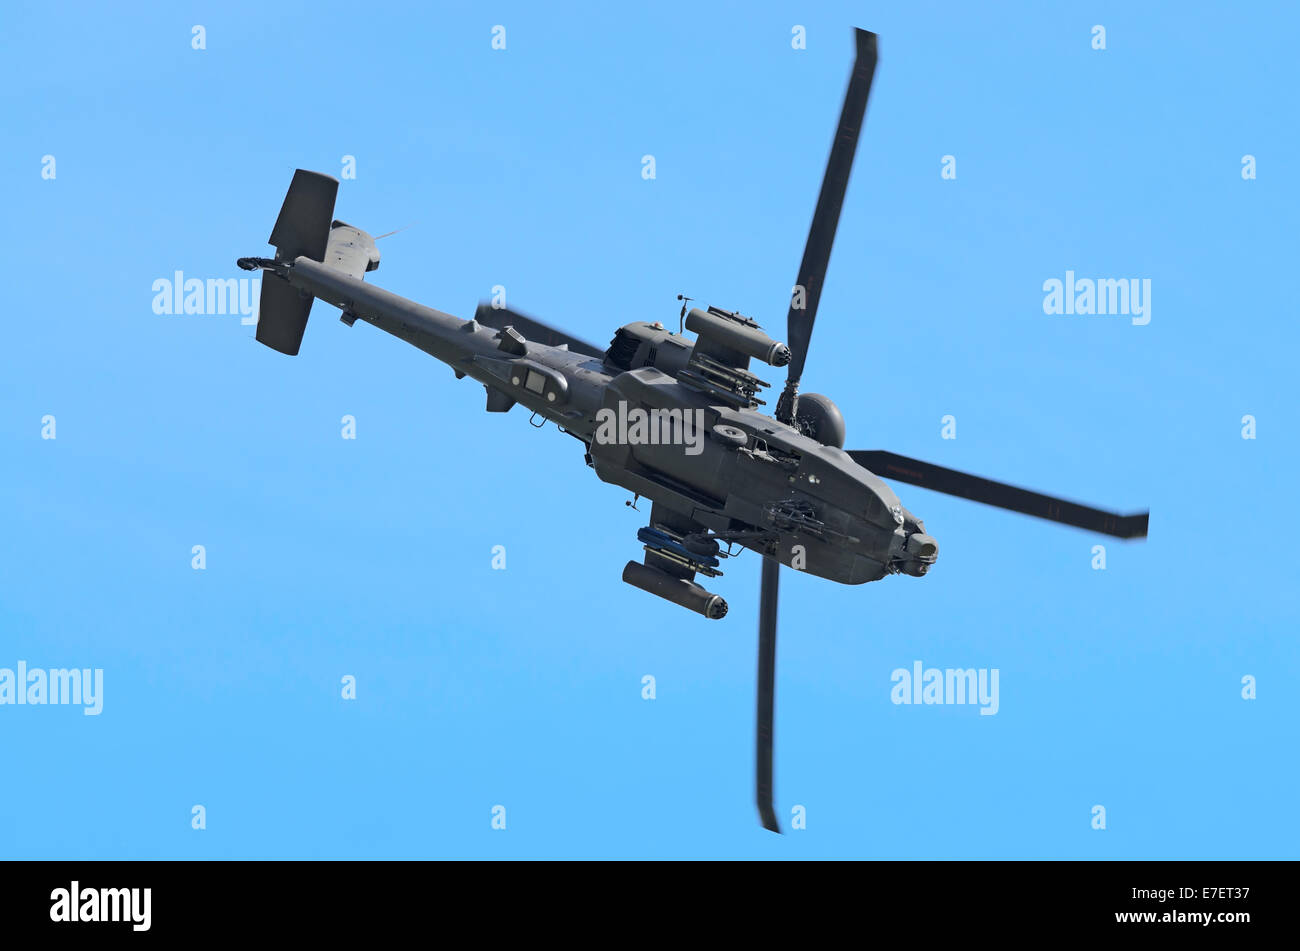 DUXFORD, CAMBRIDGESHIRE, ENGLAND - 25 Mai: AH-64 Apache Hubschrauber drehen für Bodenangriffe Stockfoto